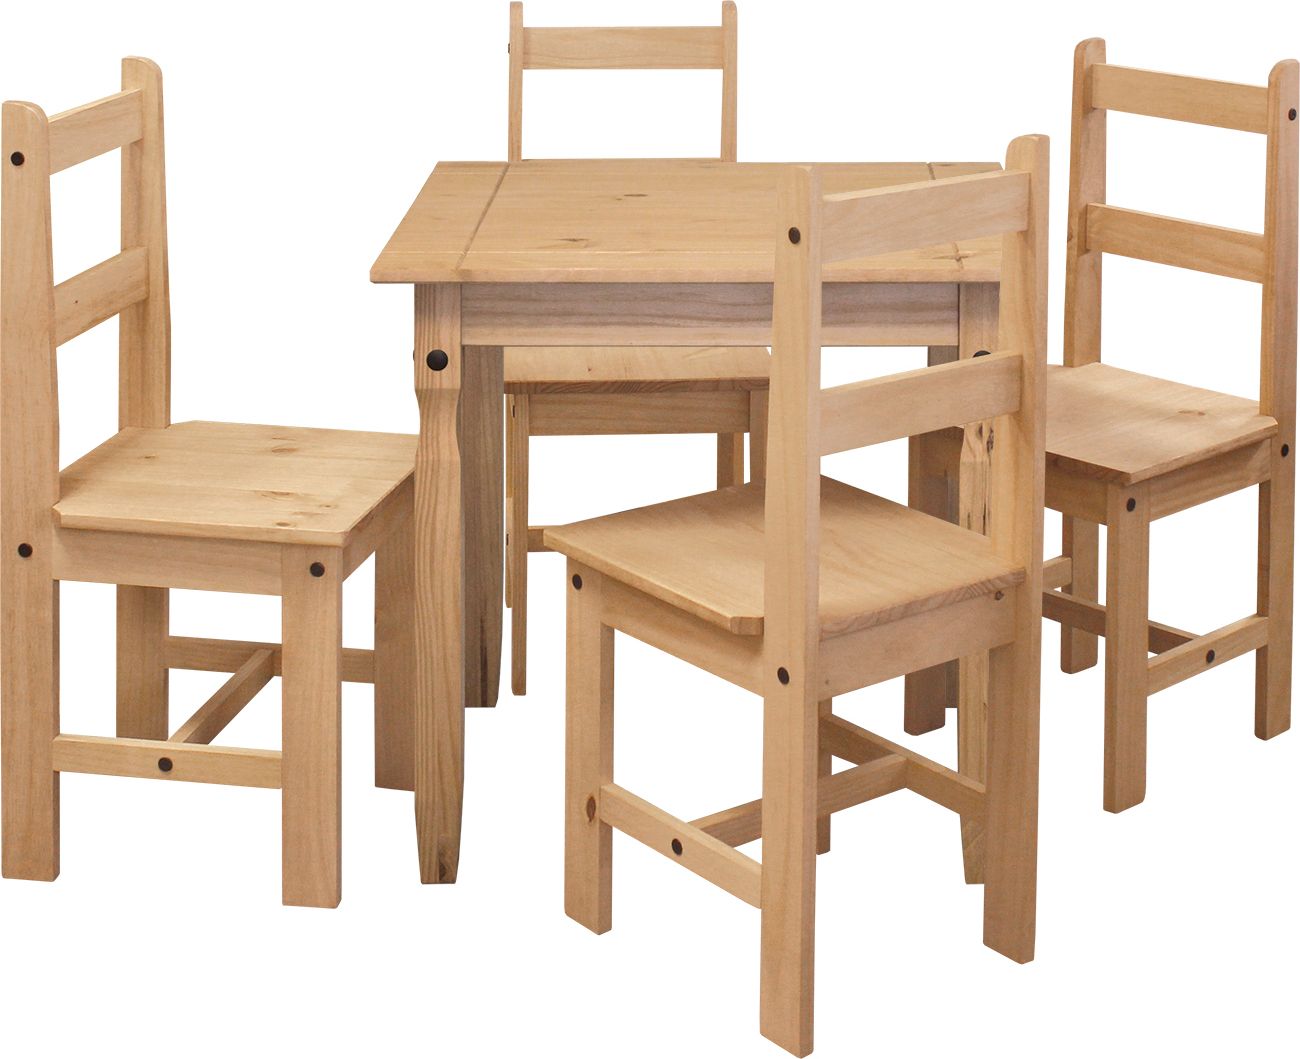 Jídelní stůl 16117 + 4 židle 1627 CORONA 2 Mdum - M DUM.cz